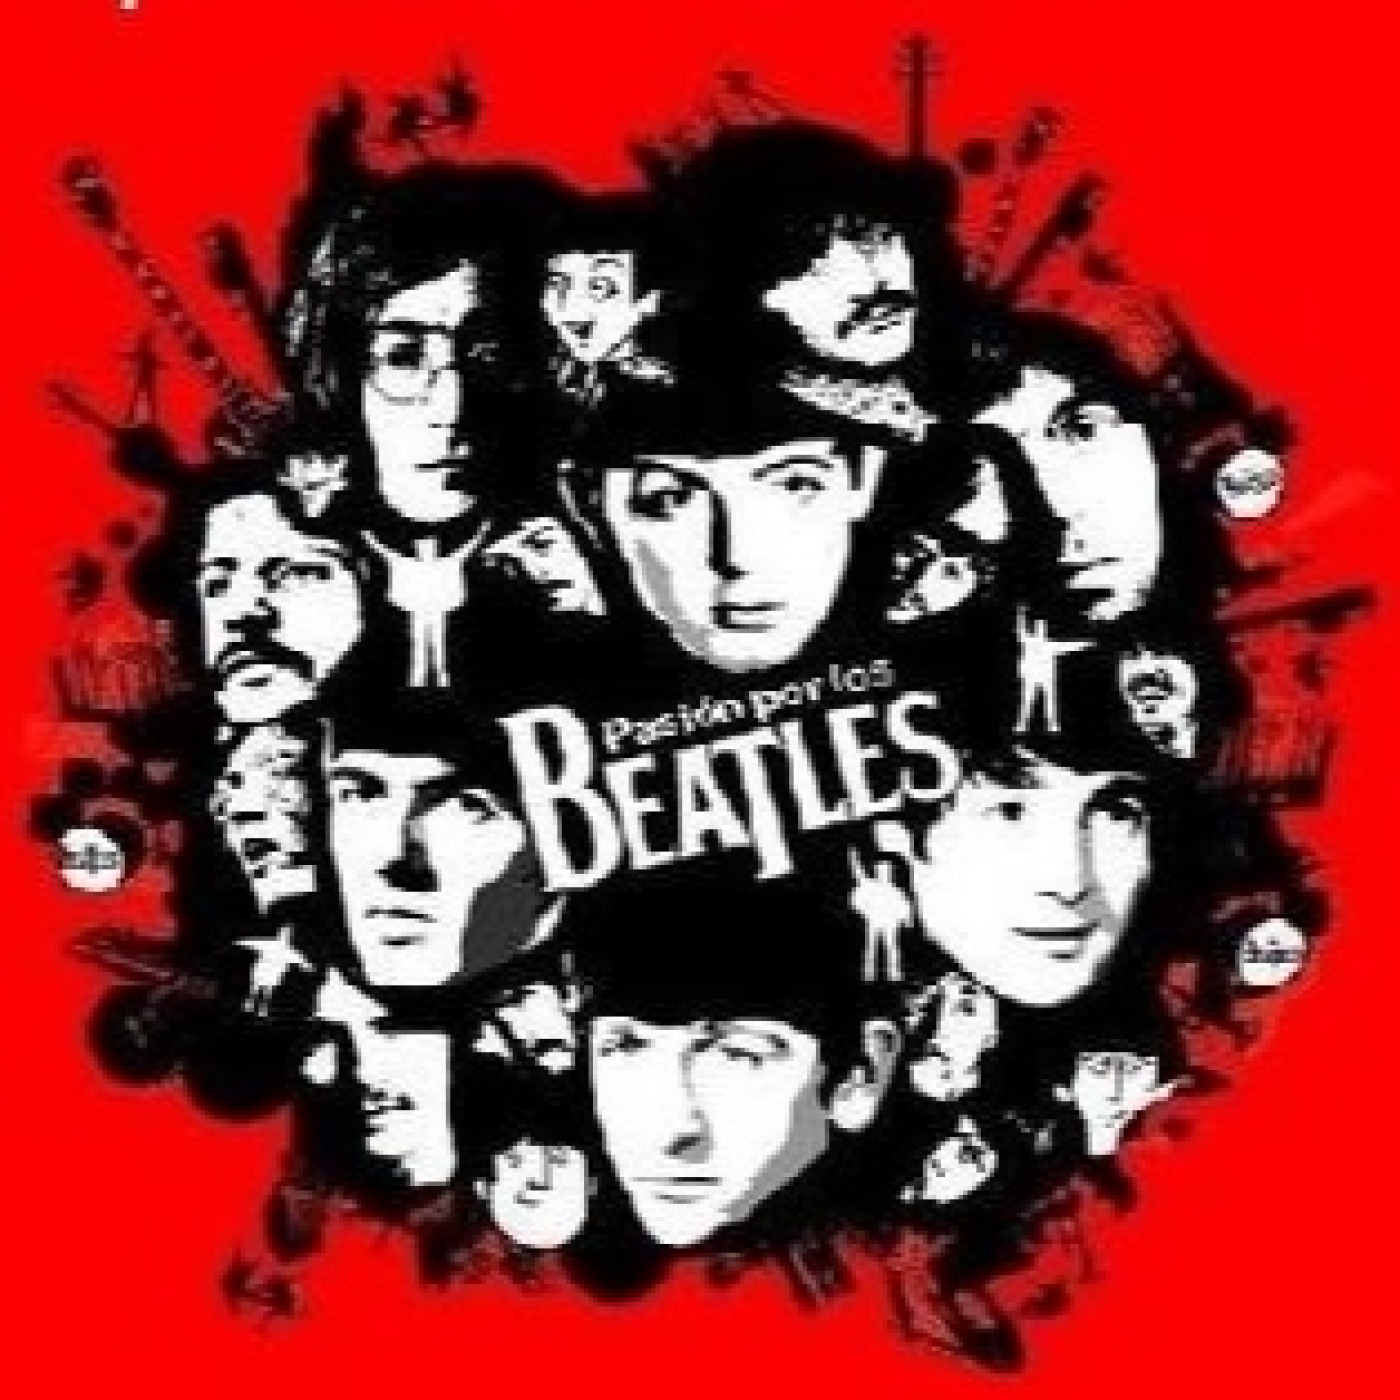 Pasión por los beatles 088 - Beatles: Homenaje a John Lennon - Efemérides Beatles